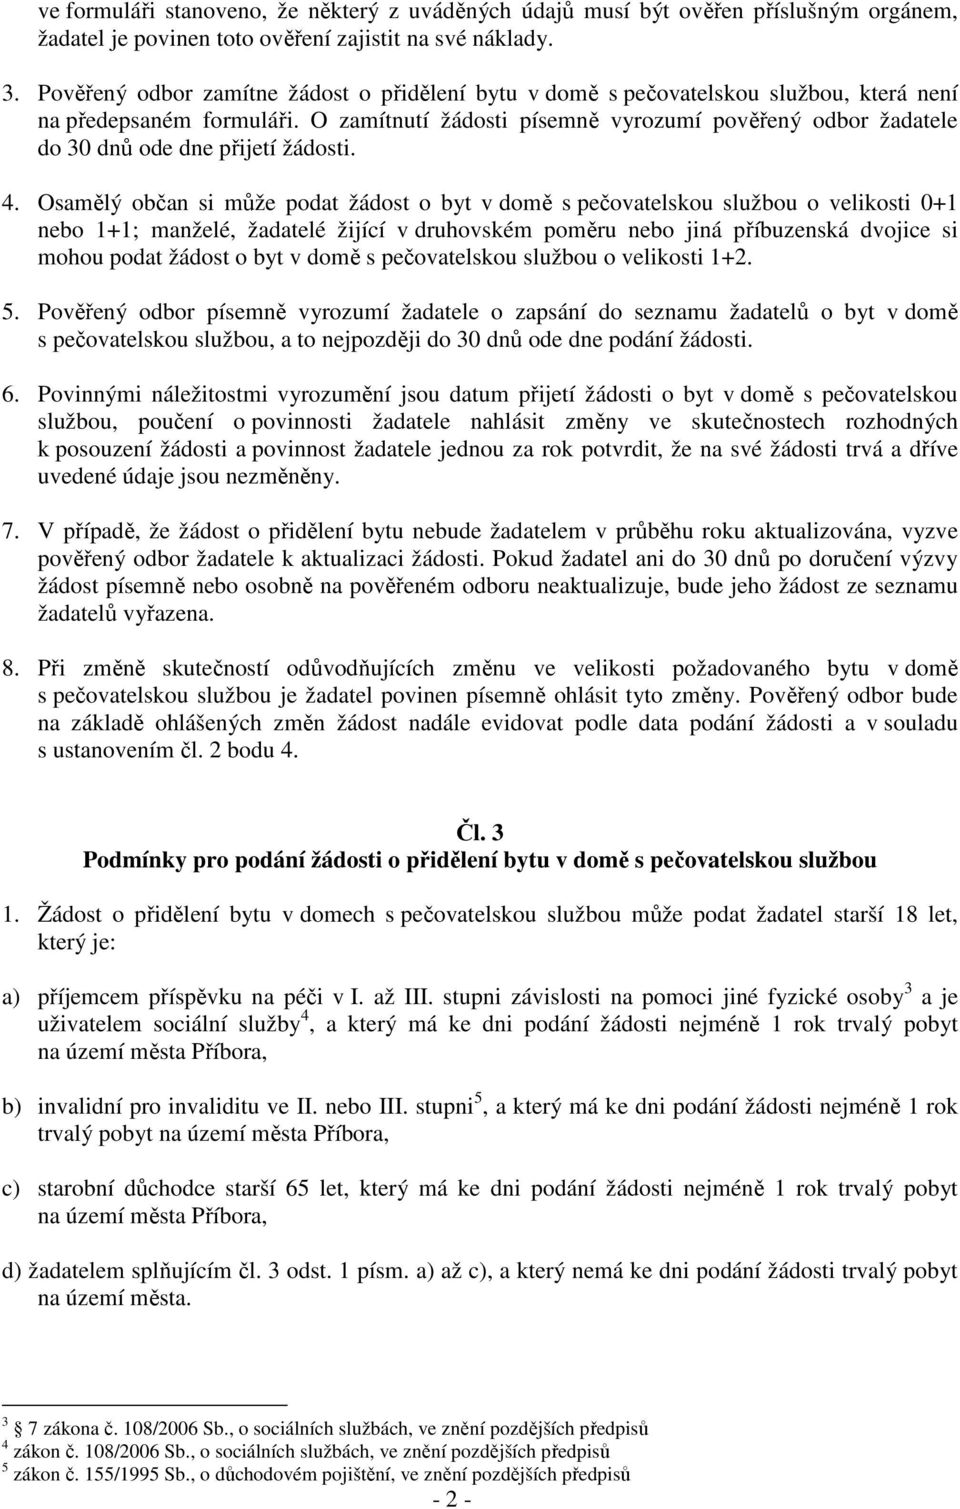 Pravidla pro přidělování bytů. bytů v domech s pečovatelskou službou ve  městě Příboře. - PDF Free Download